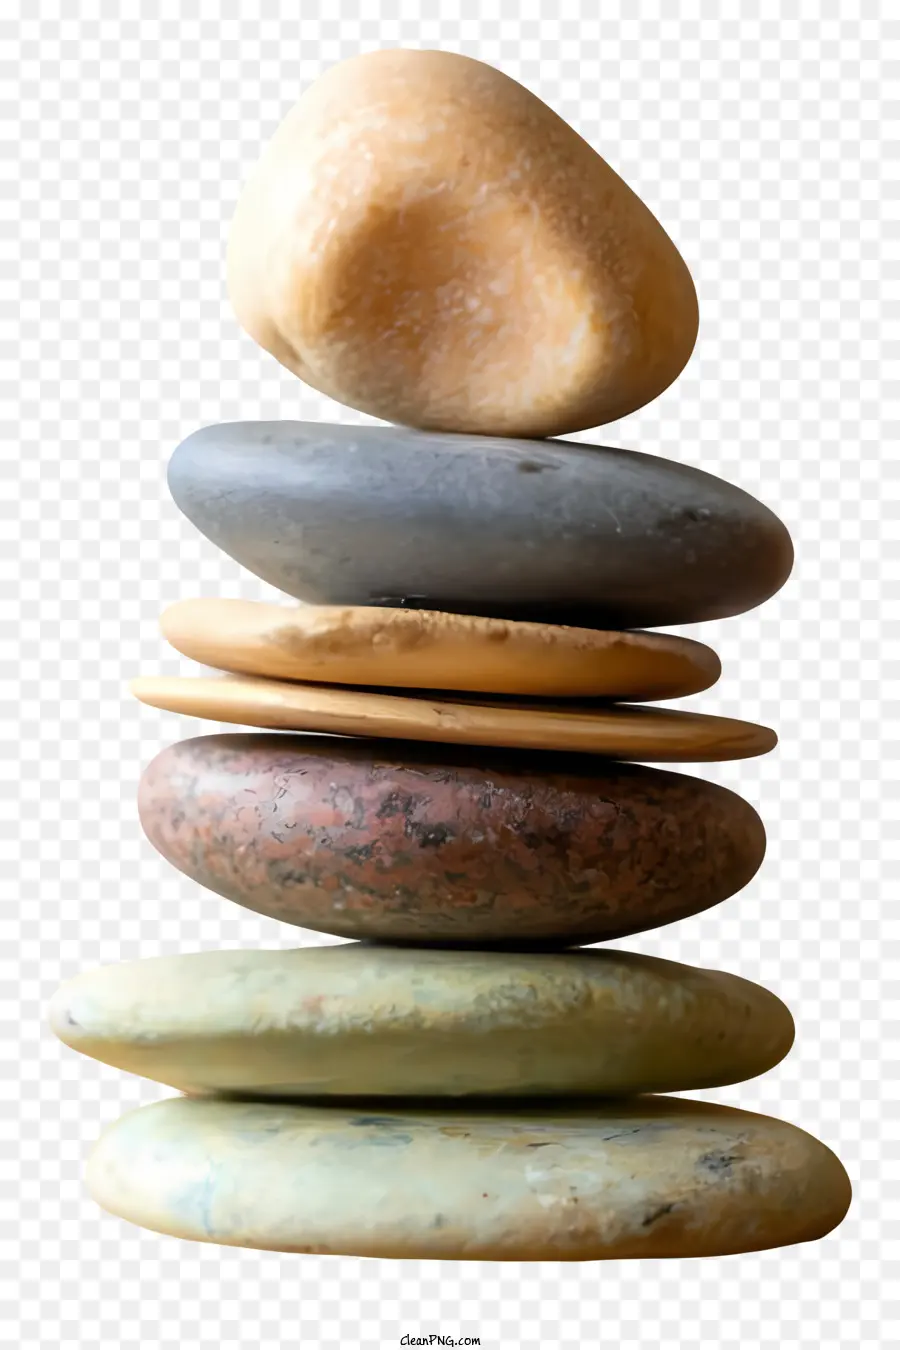 Stones Stones Round Stones Stones Stones Stone Stones Stones Stones đá - Những viên đá trơn, tròn, đầy màu sắc xếp chồng lên nhau